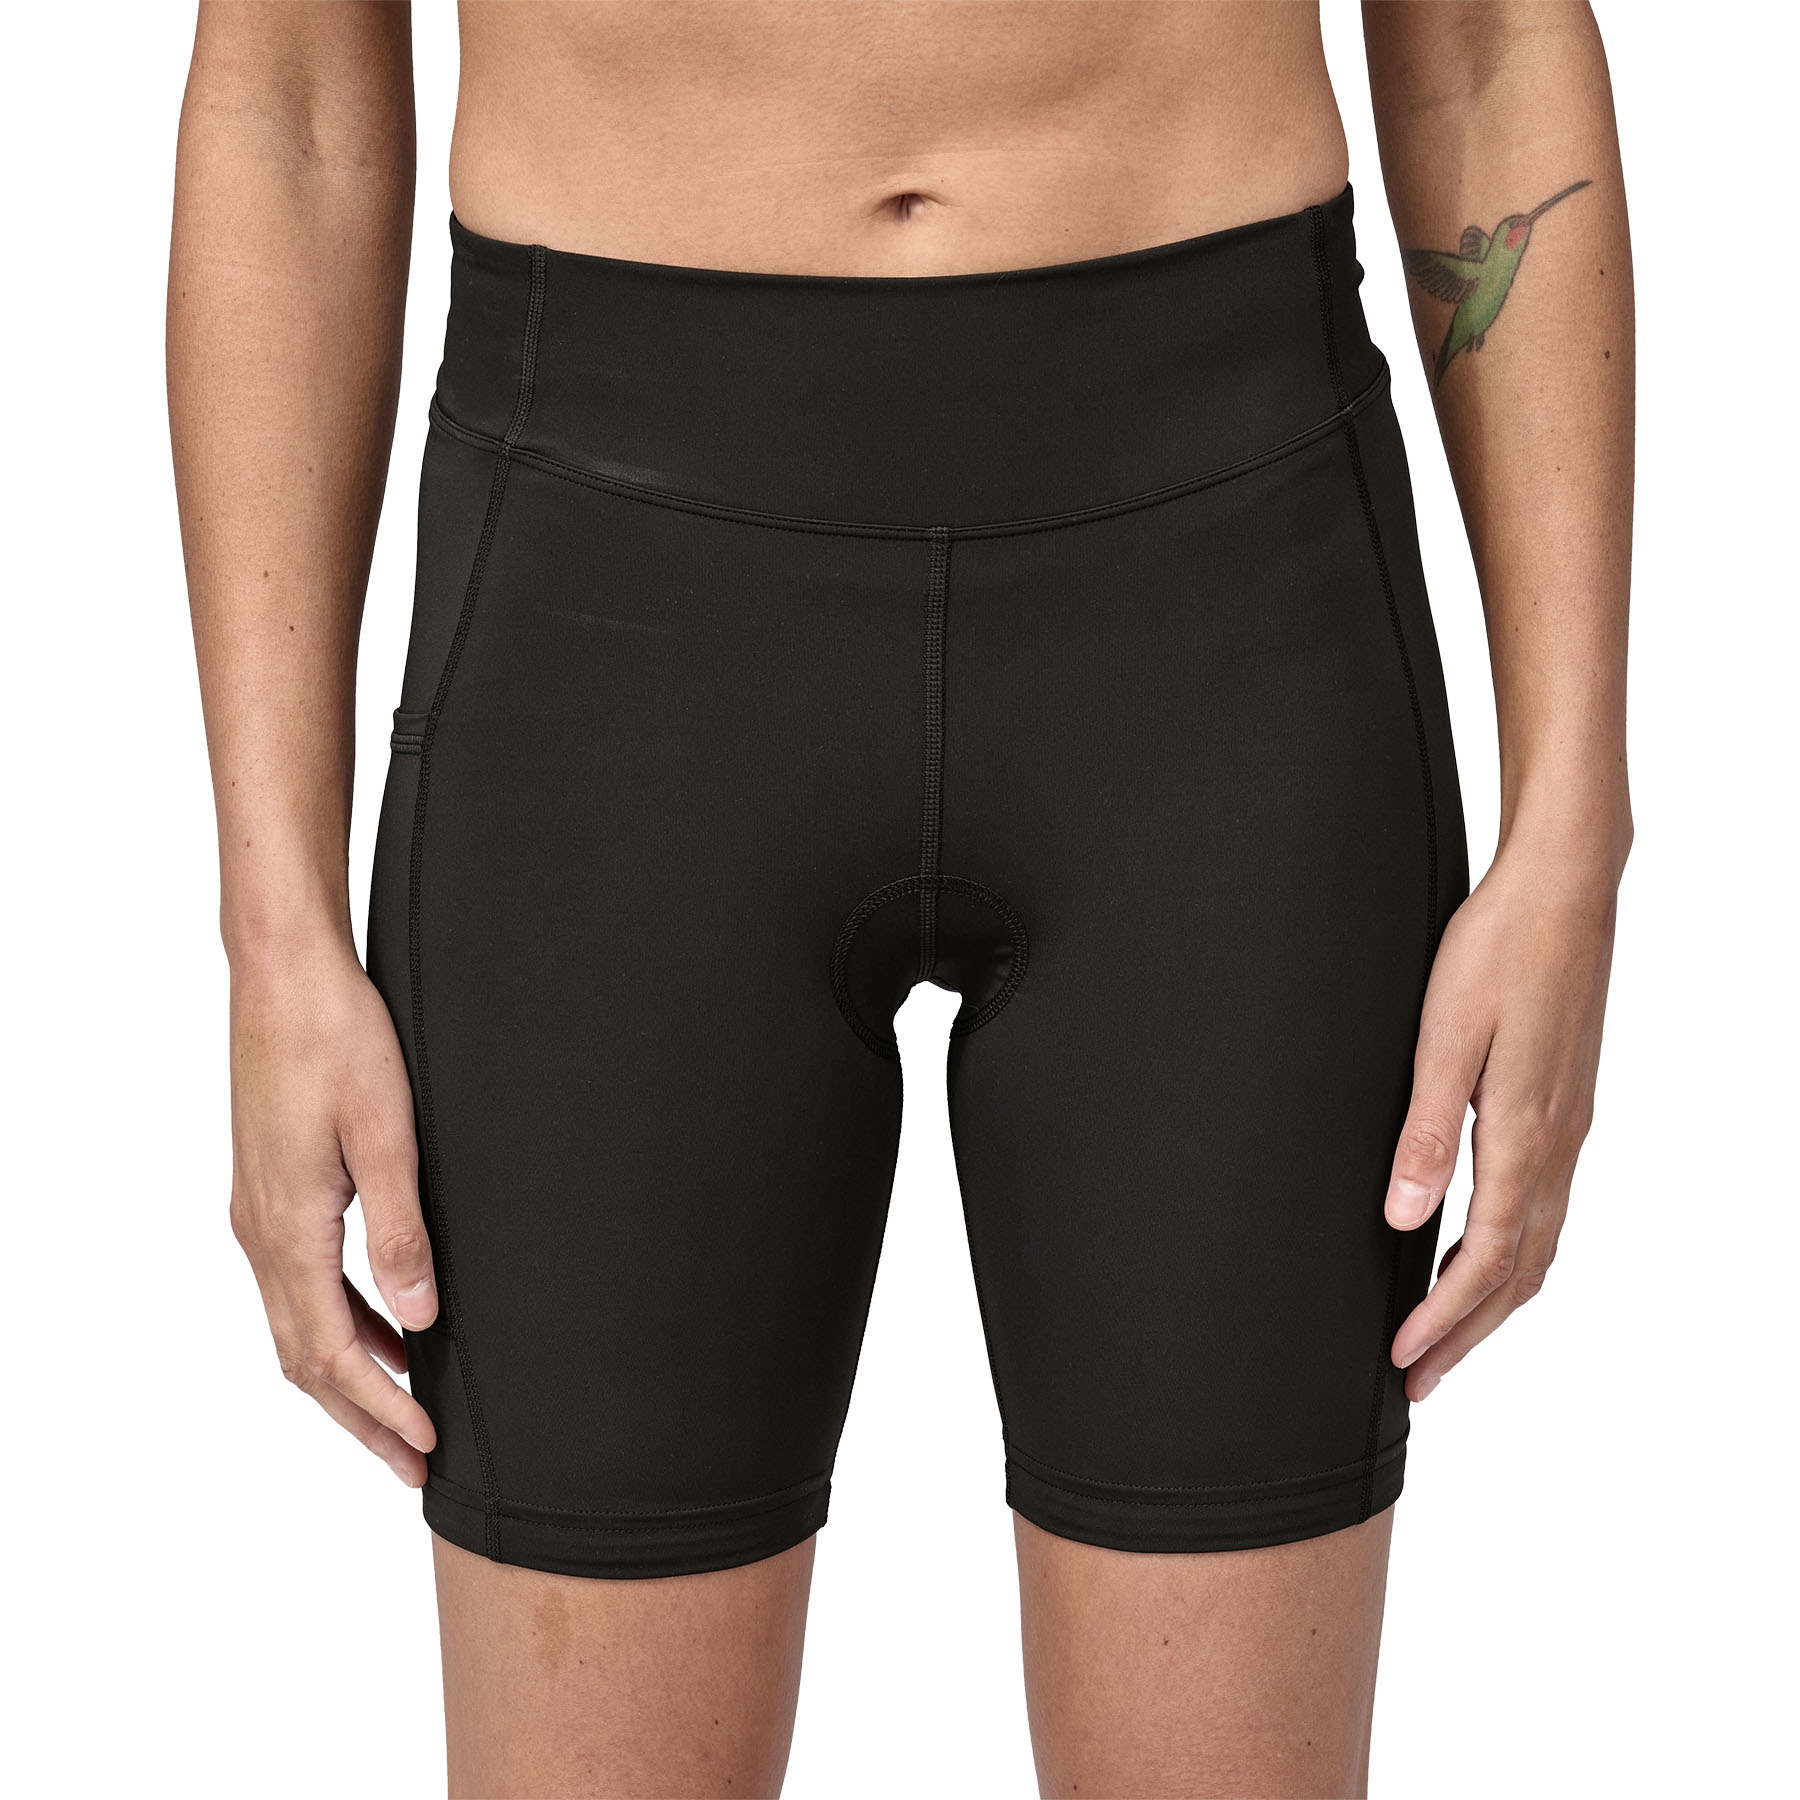 Produktbild von Patagonia Nether Damen Fahrrad-Shorts - schwarz